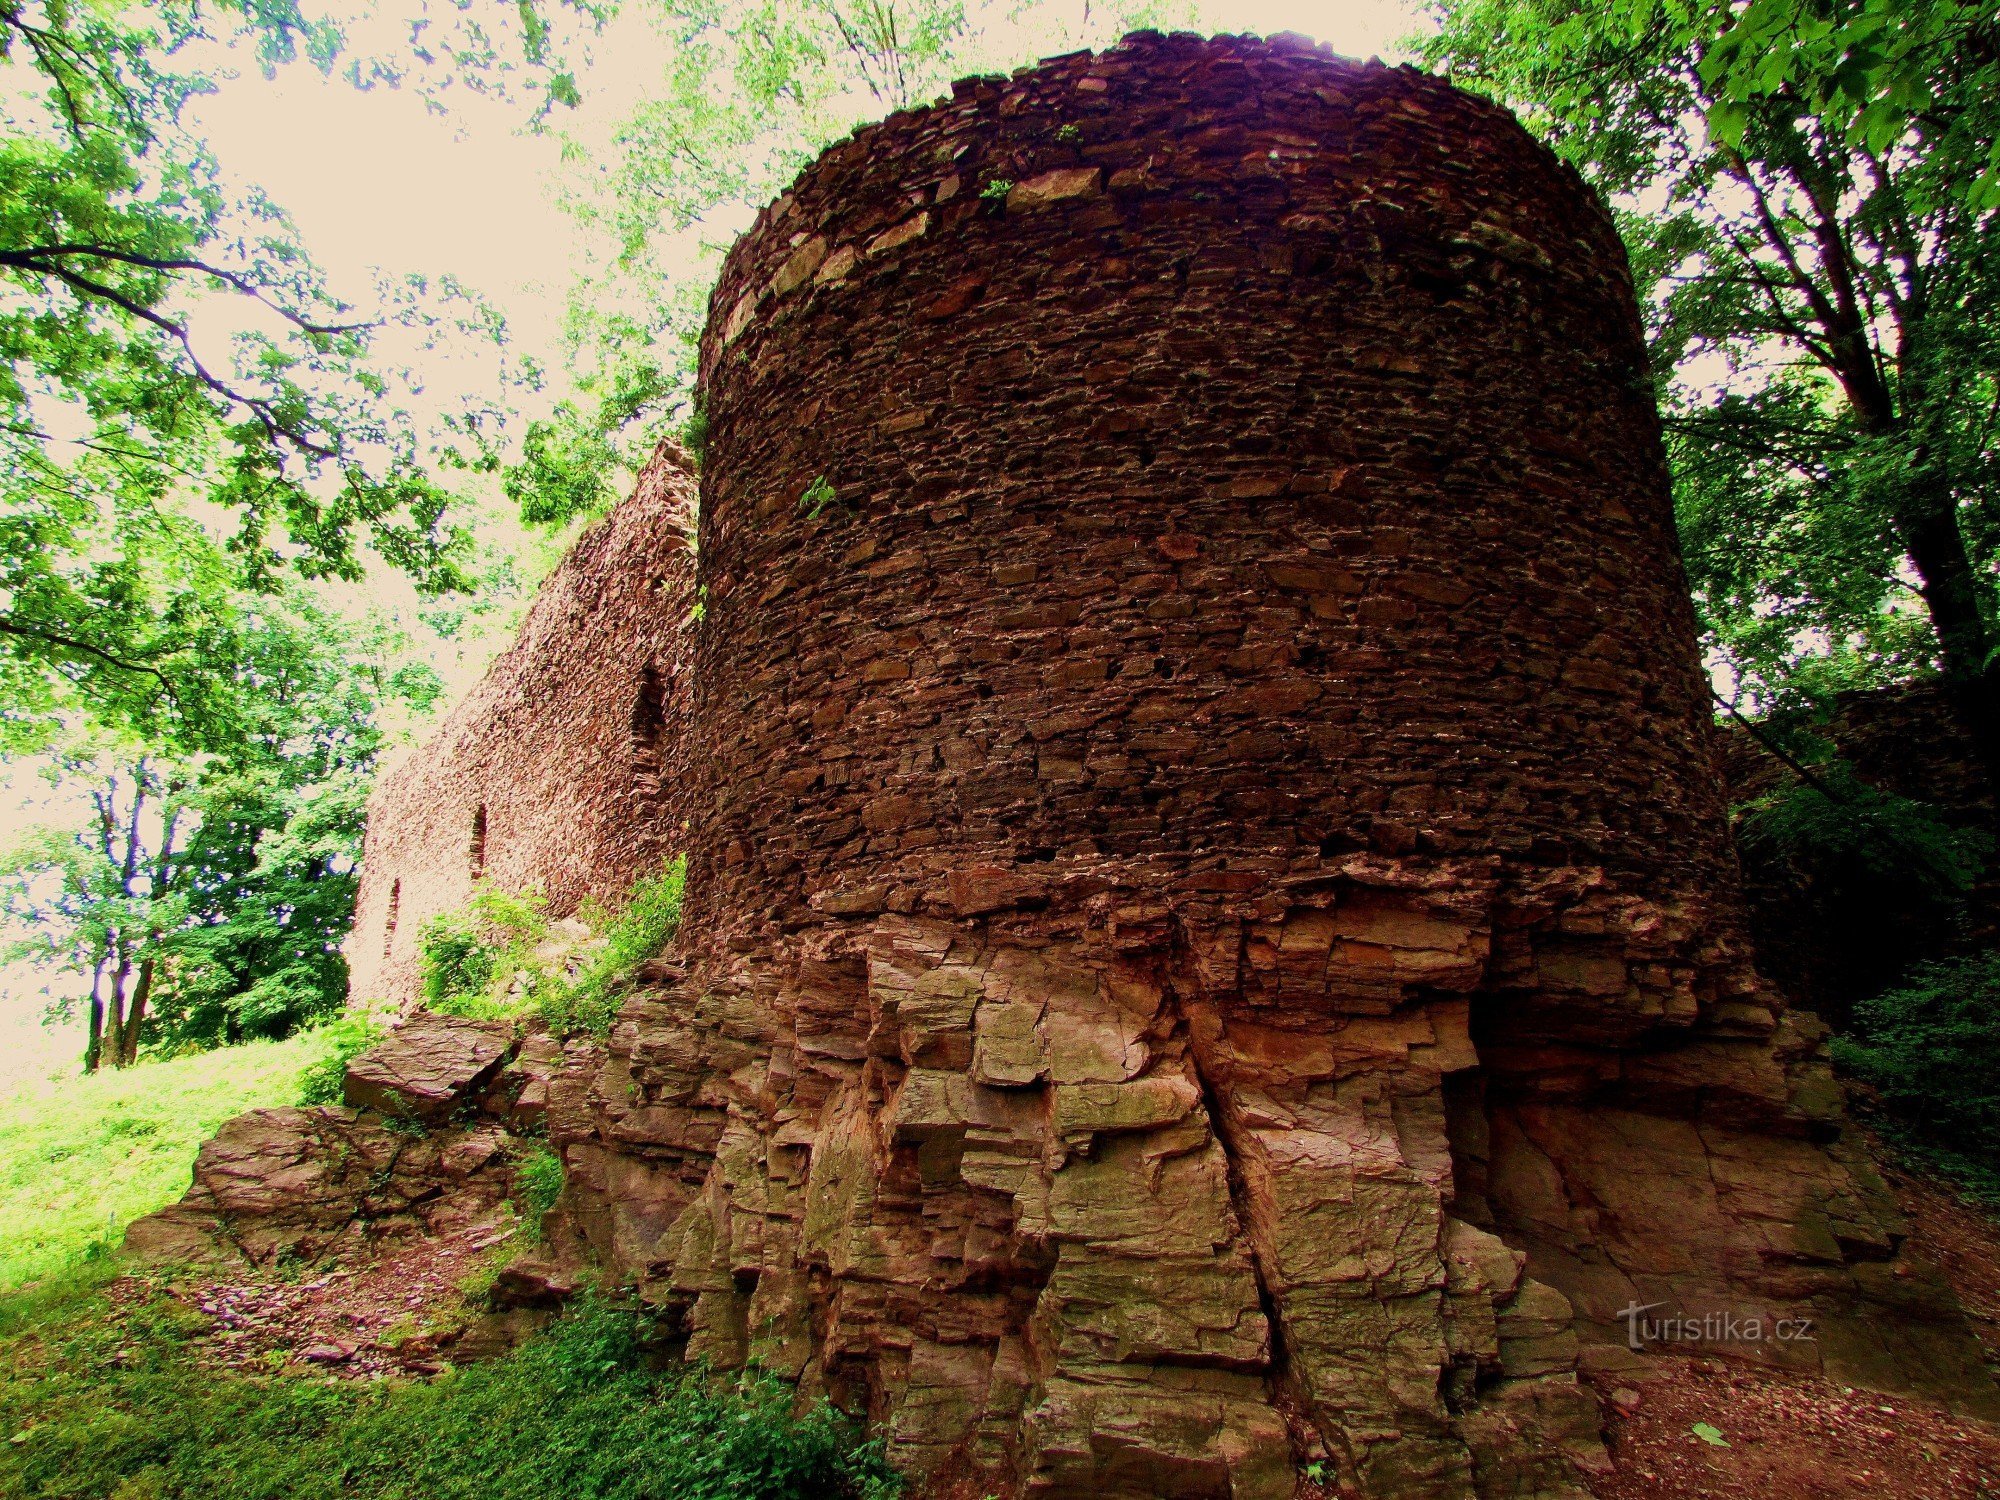 Πίσω από τα ερείπια του Cimburk στην πόλη Trnávka